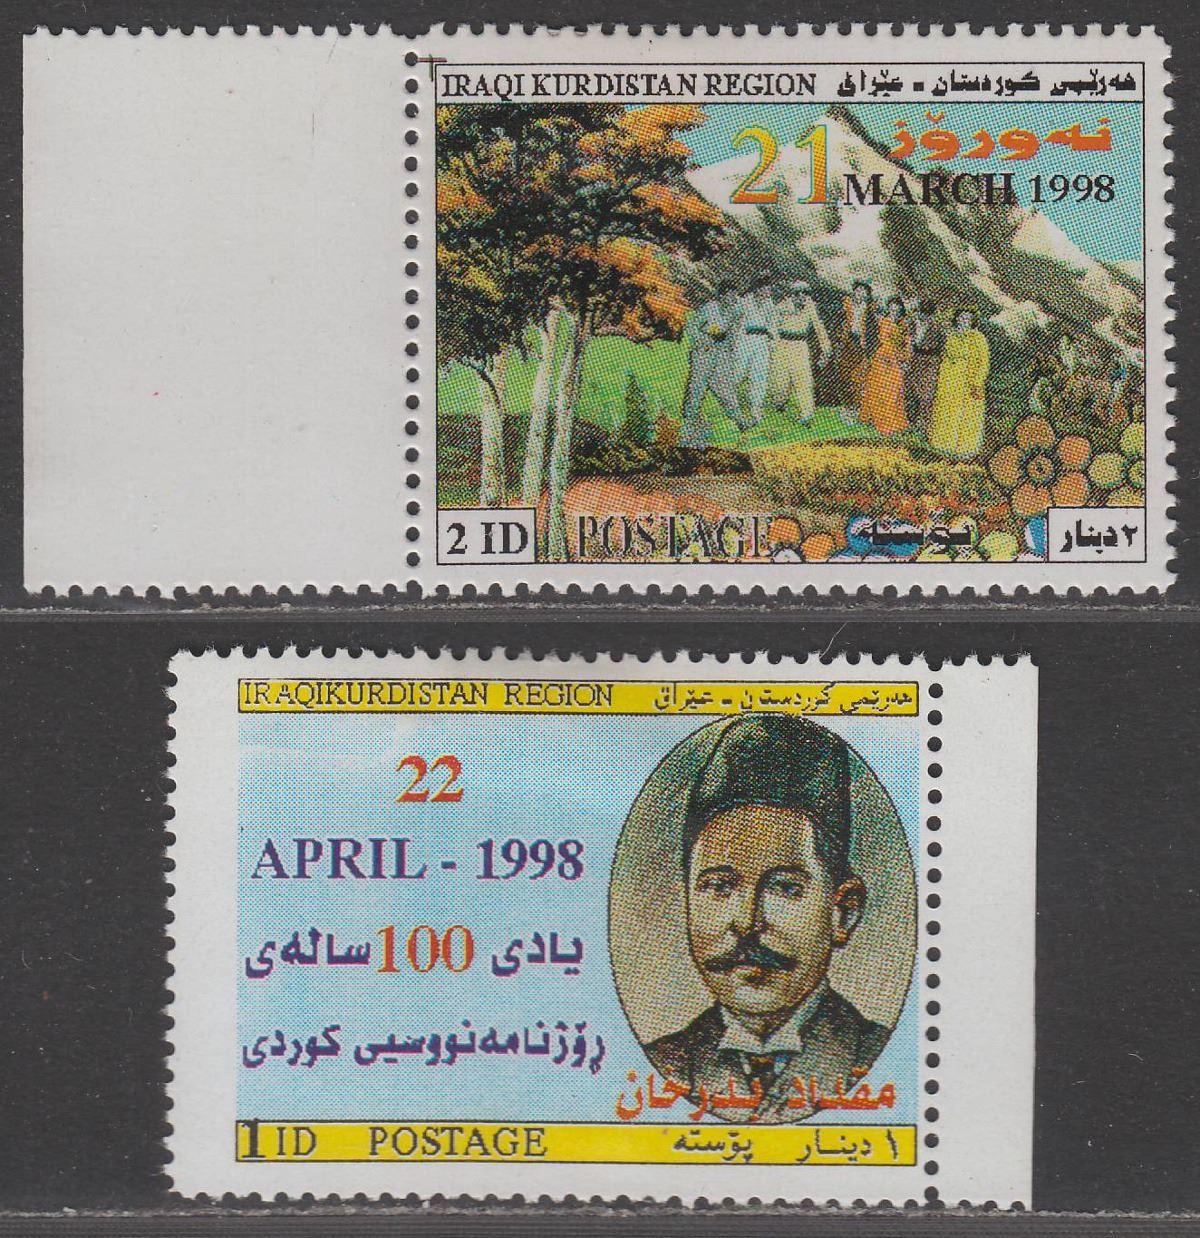 Iraq Kurdistan Region 1998 Spring Festival 2 ID, Beder Khan Anniv 1 ID Mint